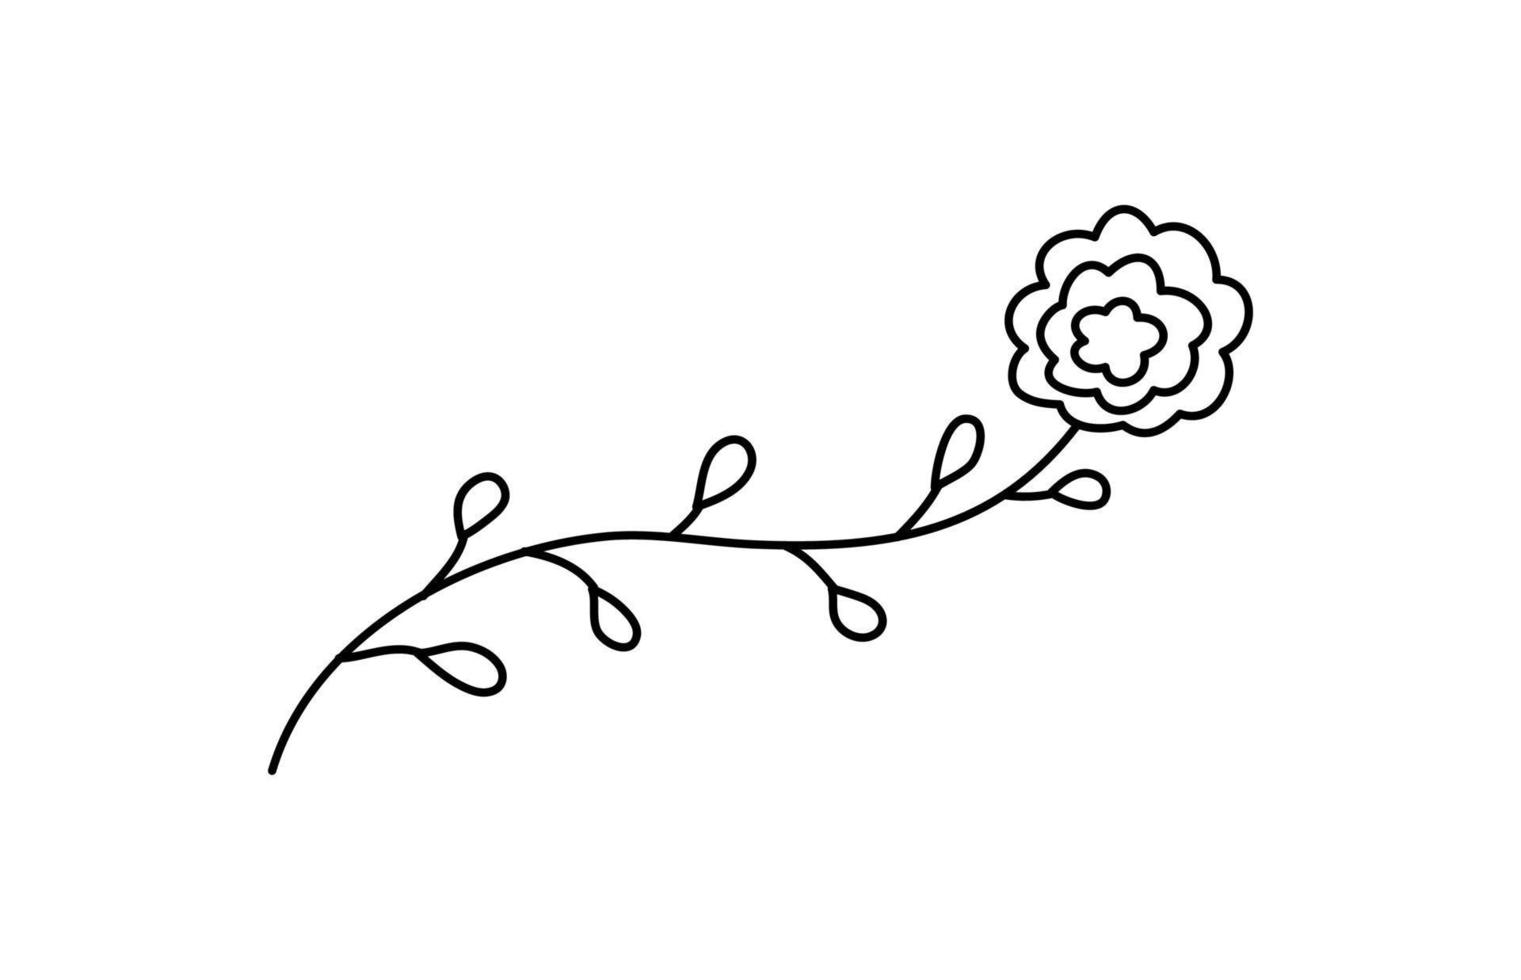 Vector simple hand drawn flower botanical illustration. Line artwork, minimal design element. elegant and delicate plant doodles for branding, graphic design. spring floral